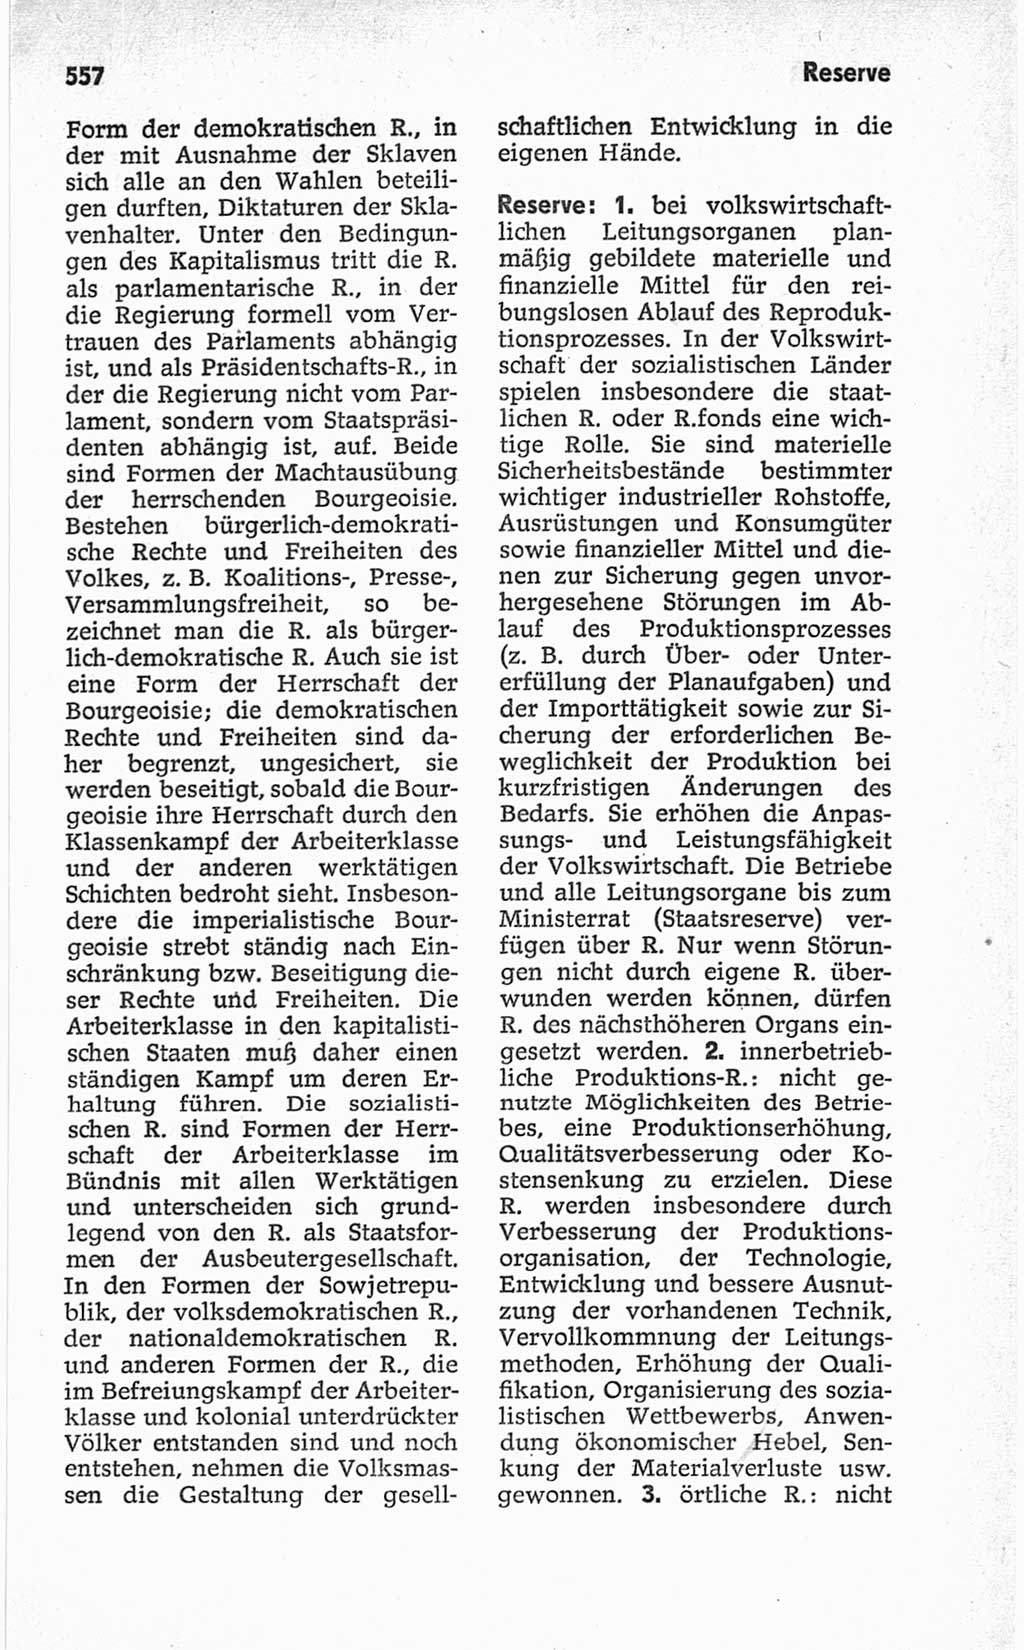 Kleines politisches Wörterbuch [Deutsche Demokratische Republik (DDR)] 1967, Seite 557 (Kl. pol. Wb. DDR 1967, S. 557)